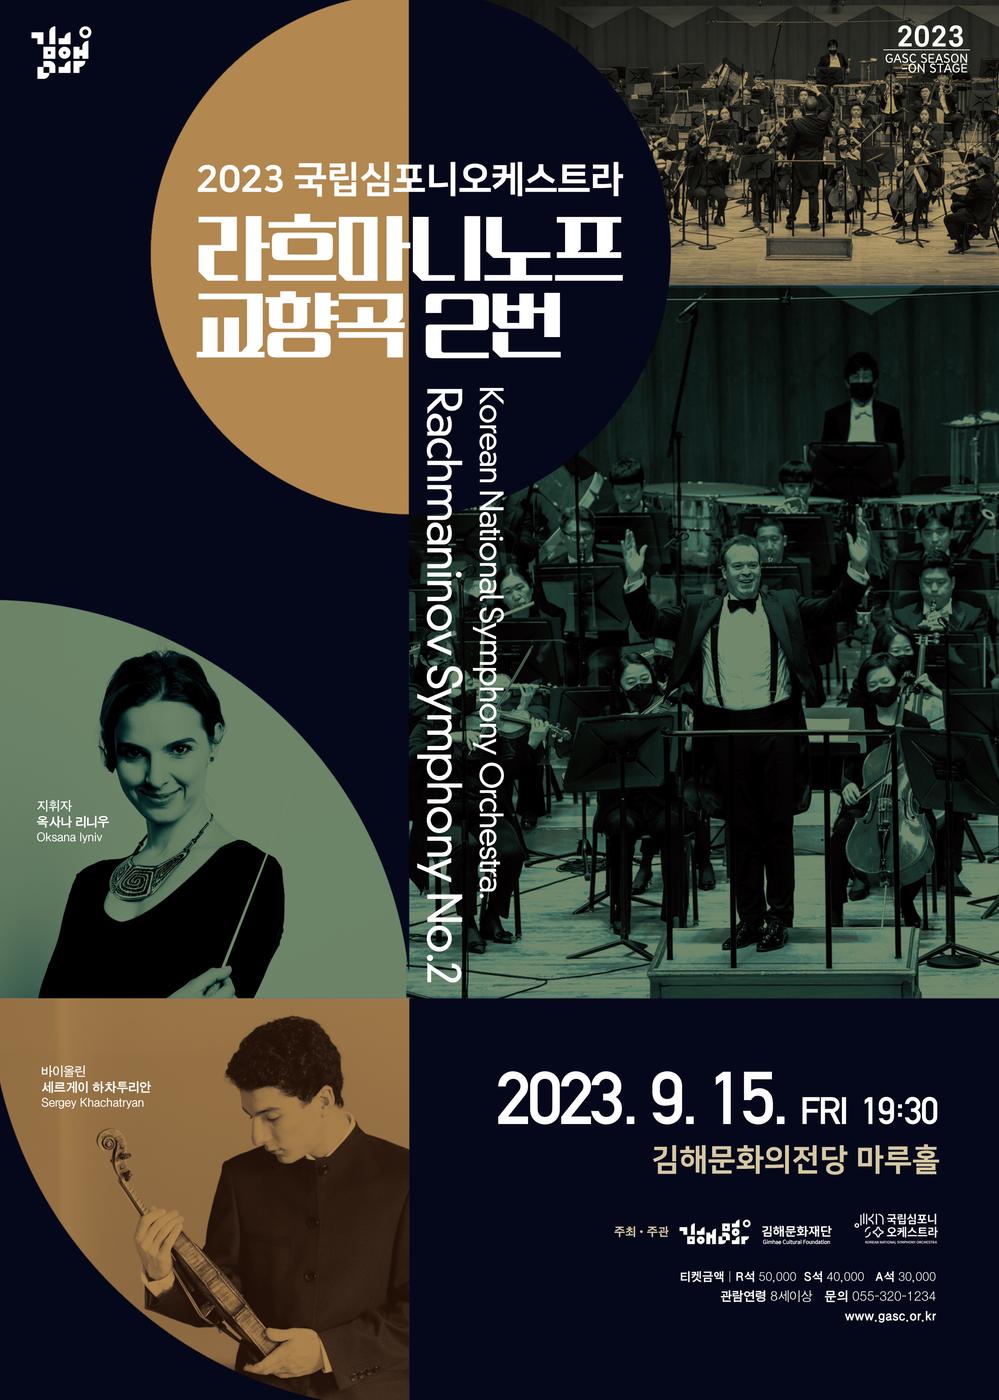 김해문화의전당 공연(국립심포니오케스트라 라흐마니노프 교향곡 2번 포스터)